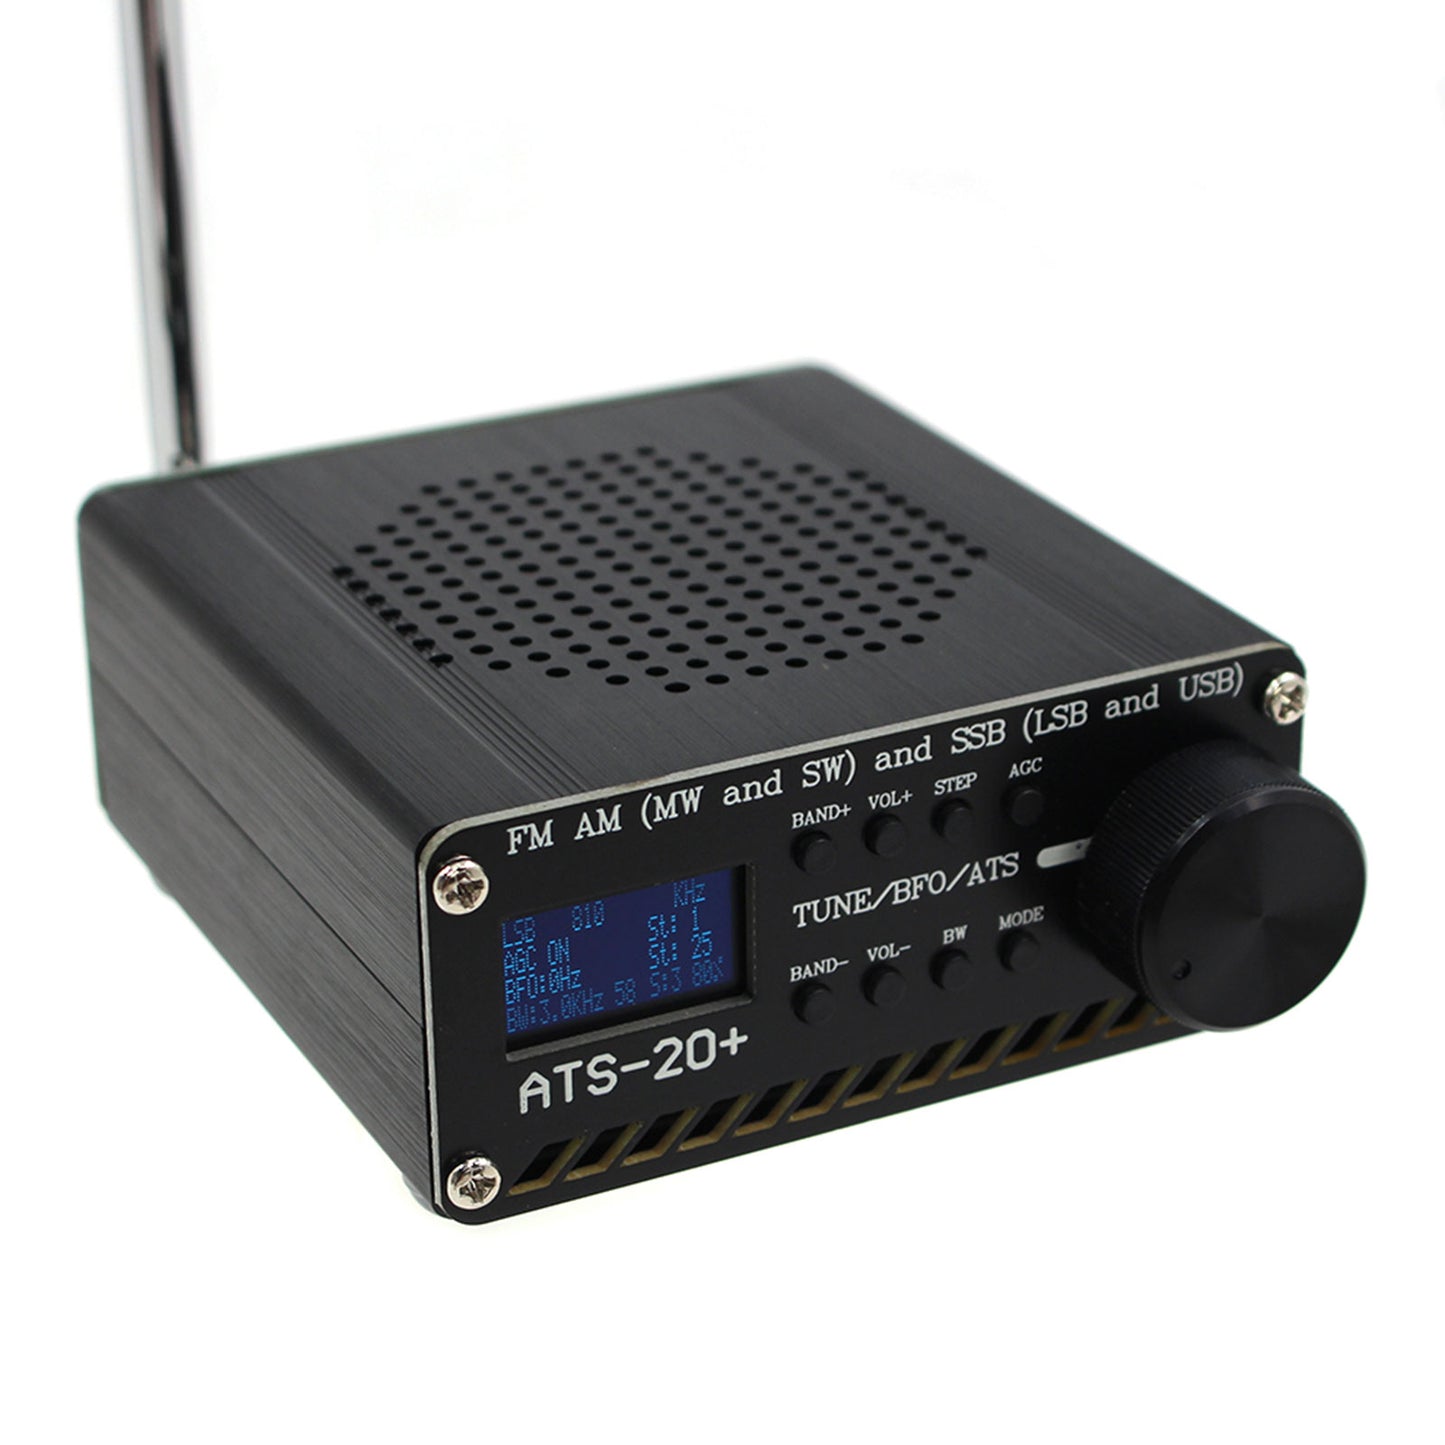 Nouveau récepteur radio ATS-20+ Plus ATS20 V2 SI4732 FM AM (MW &amp; KW) SSB (LSB &amp; USB)